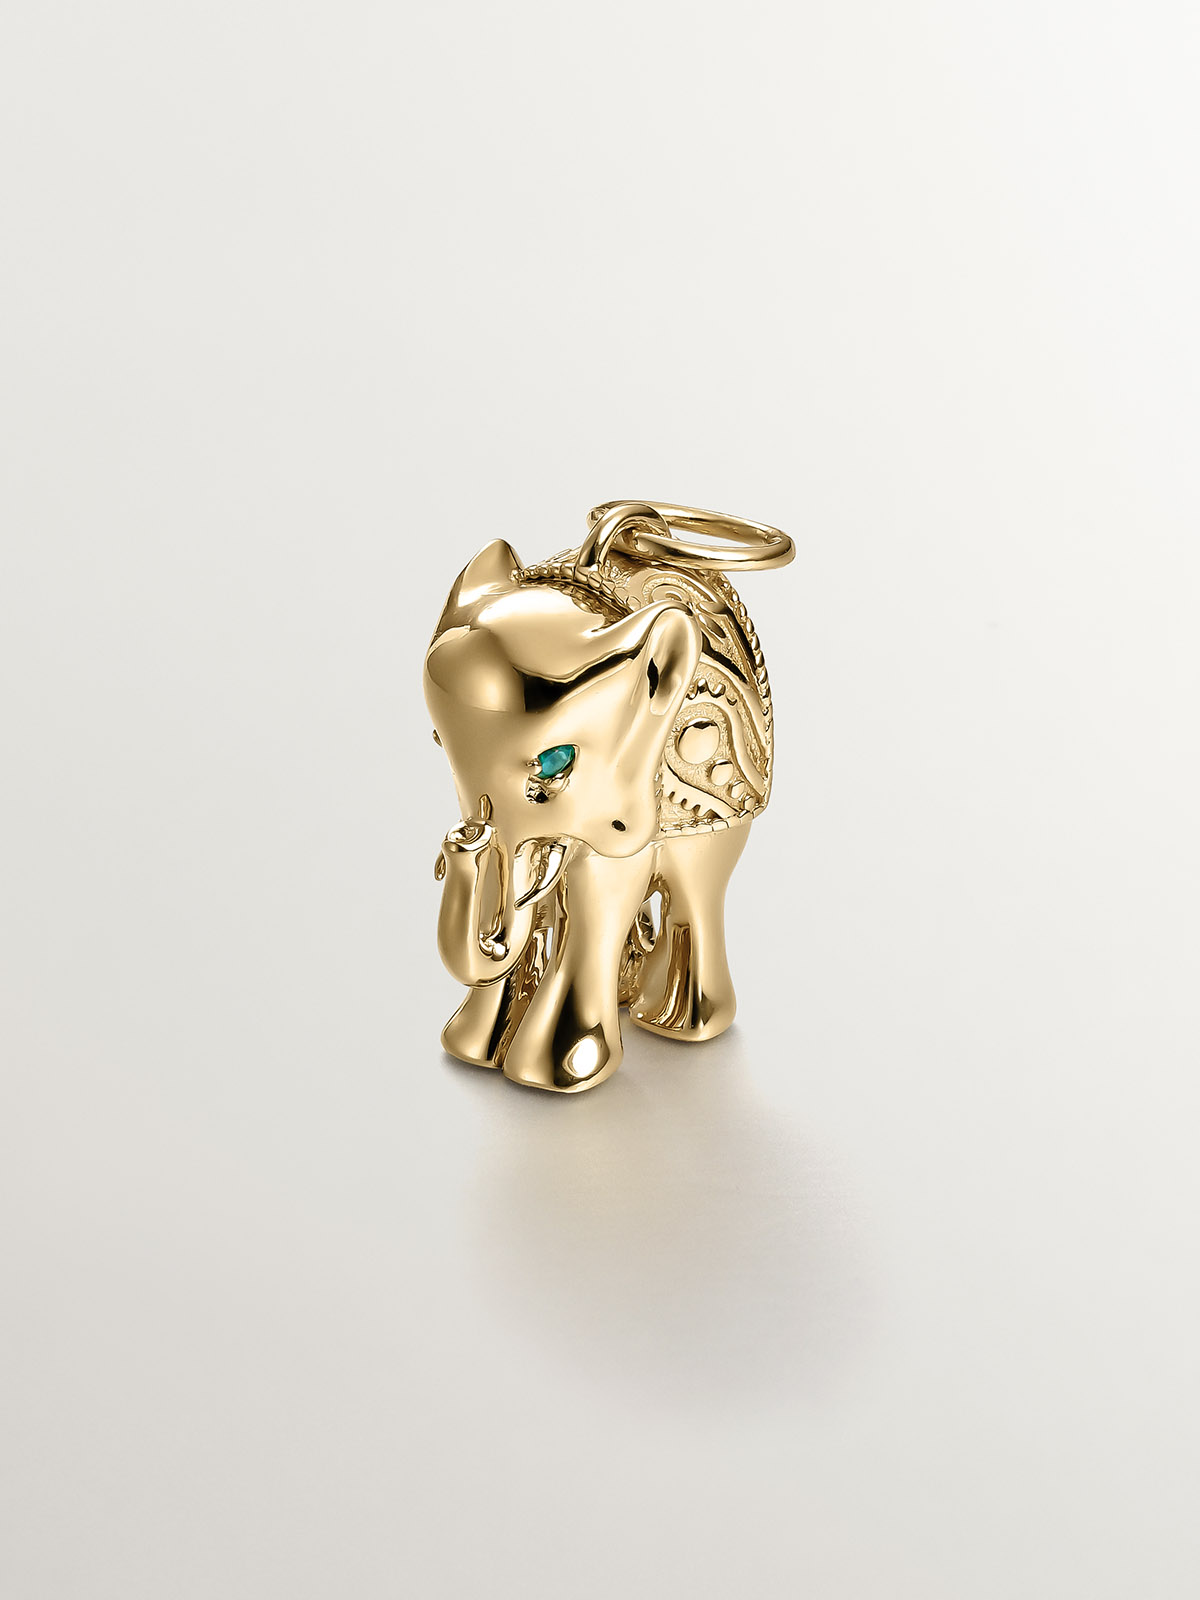 Charm de plata 925 bañada en oro amarillo de 18K con ónix verde y forma de elefante